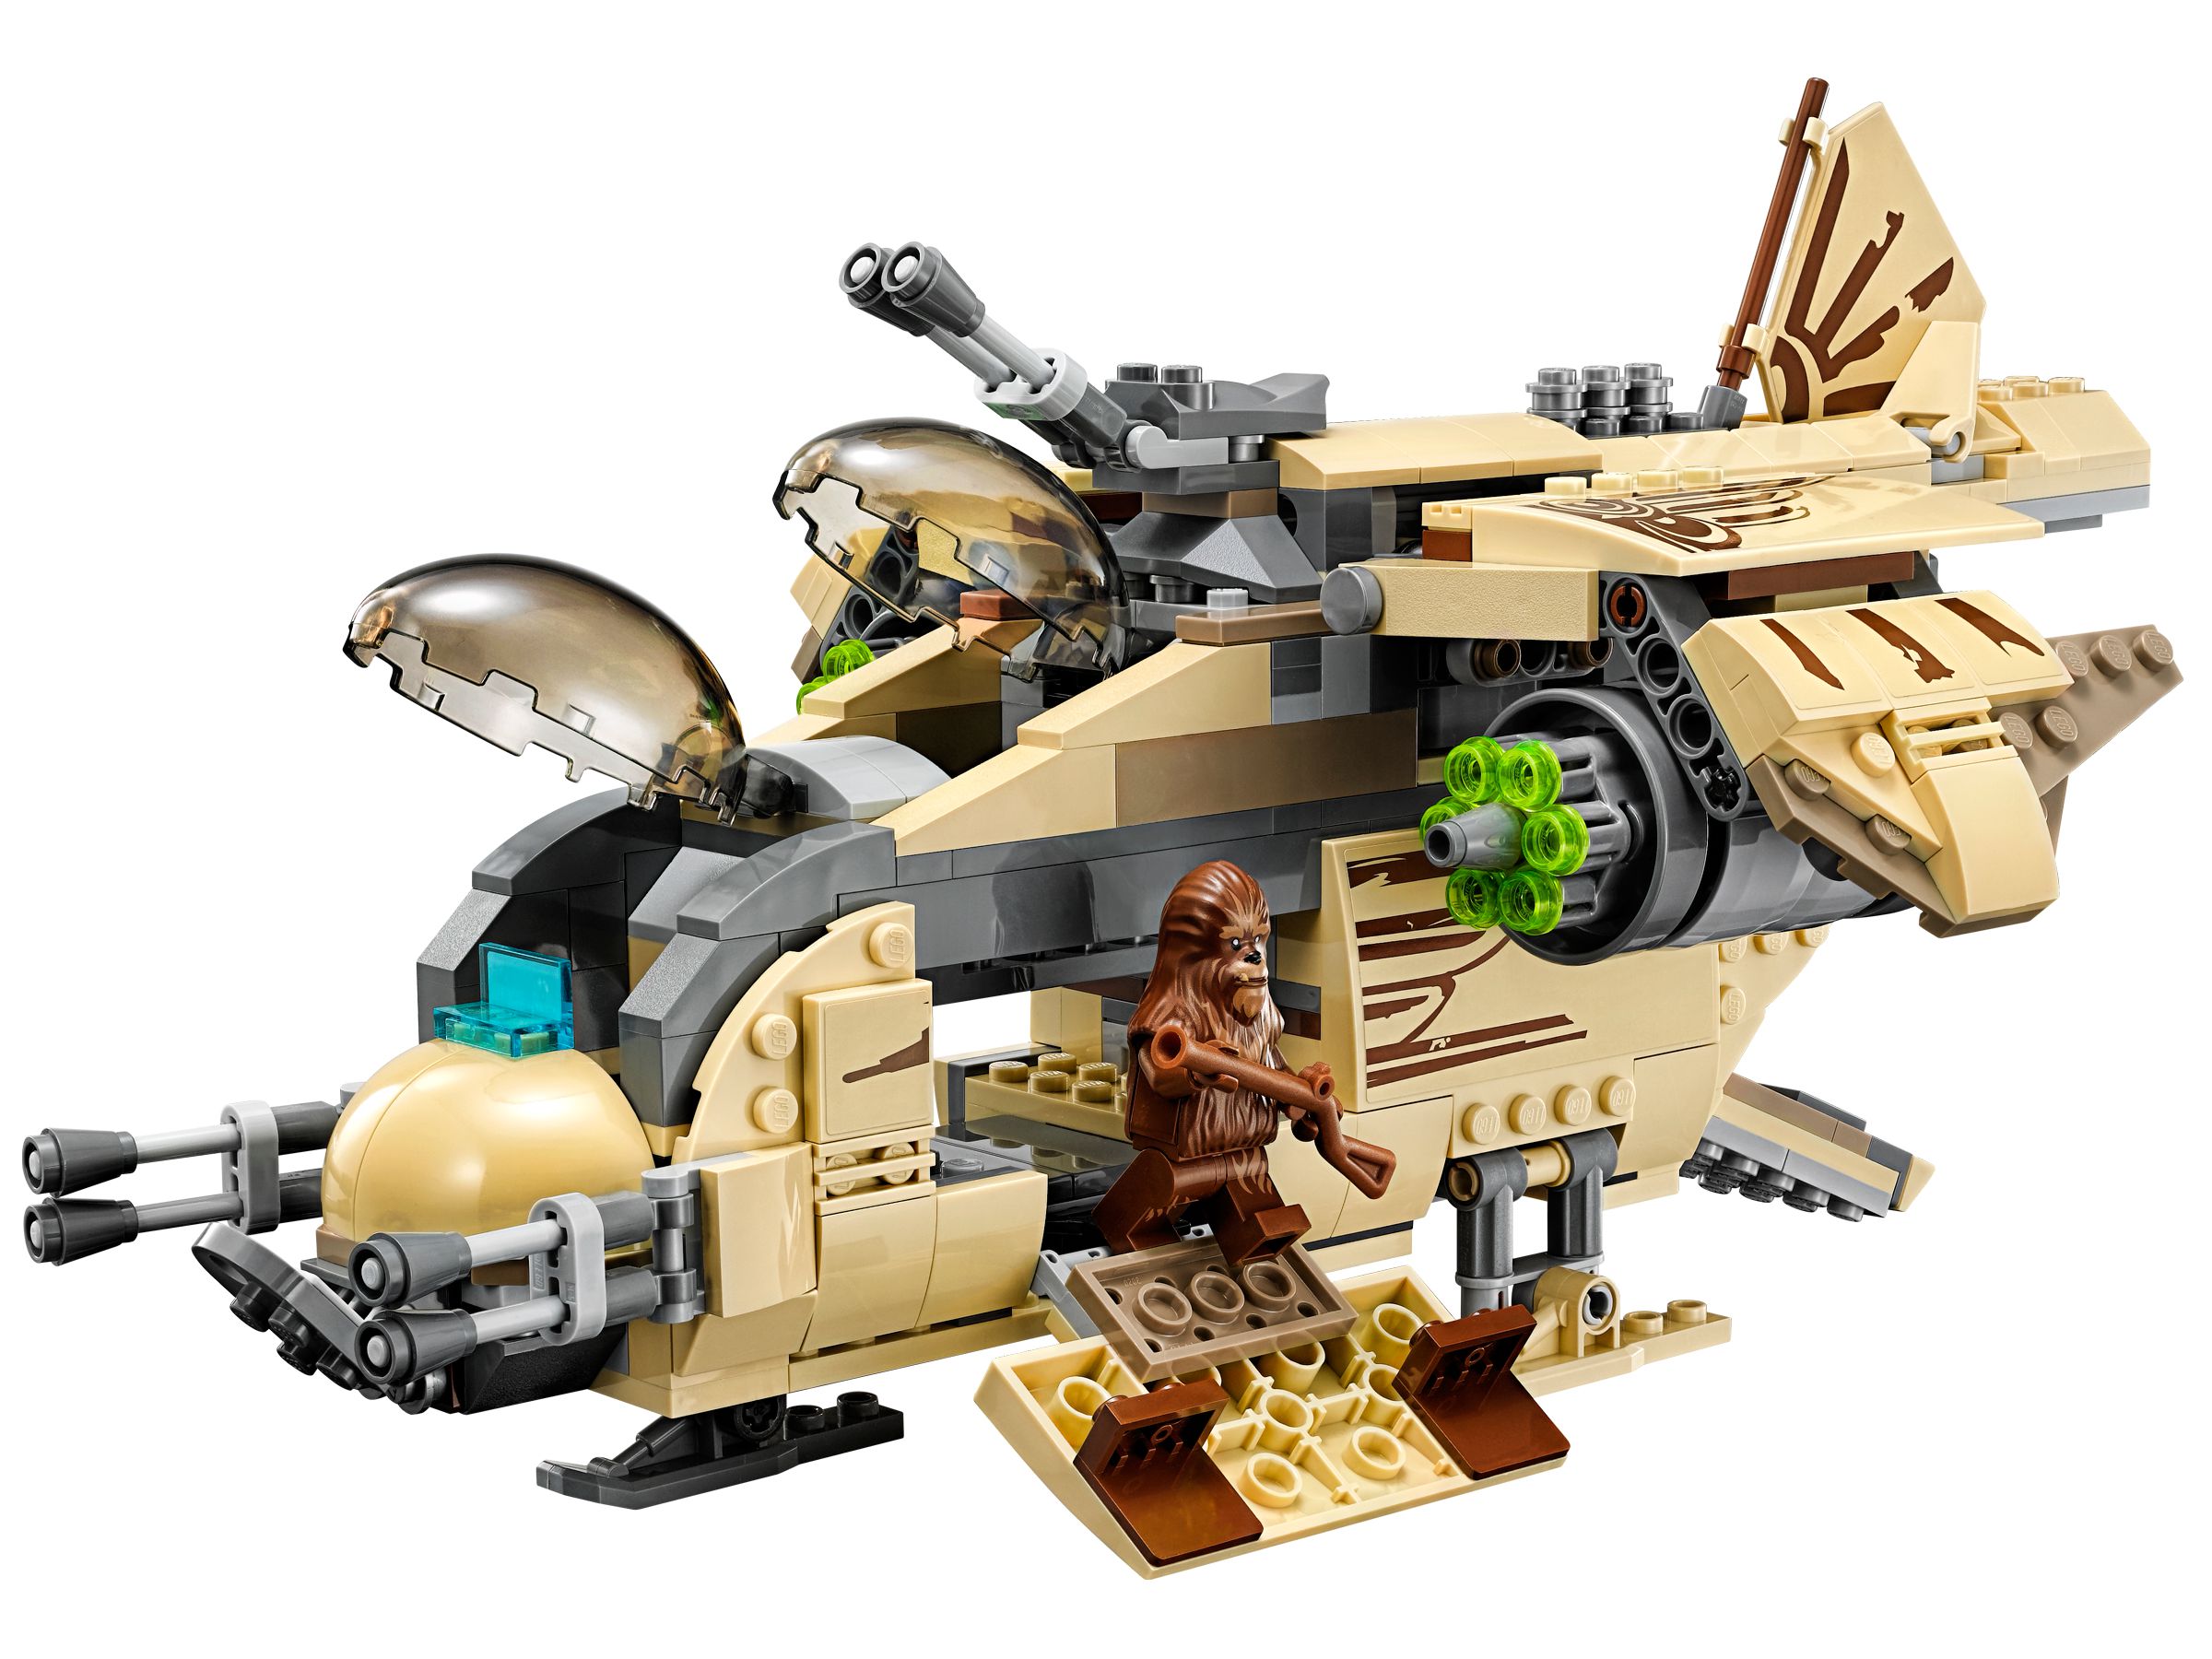 LEGO Star Wars 75084 Wookiee™ Gunship LEGO_75084_alt2.jpg